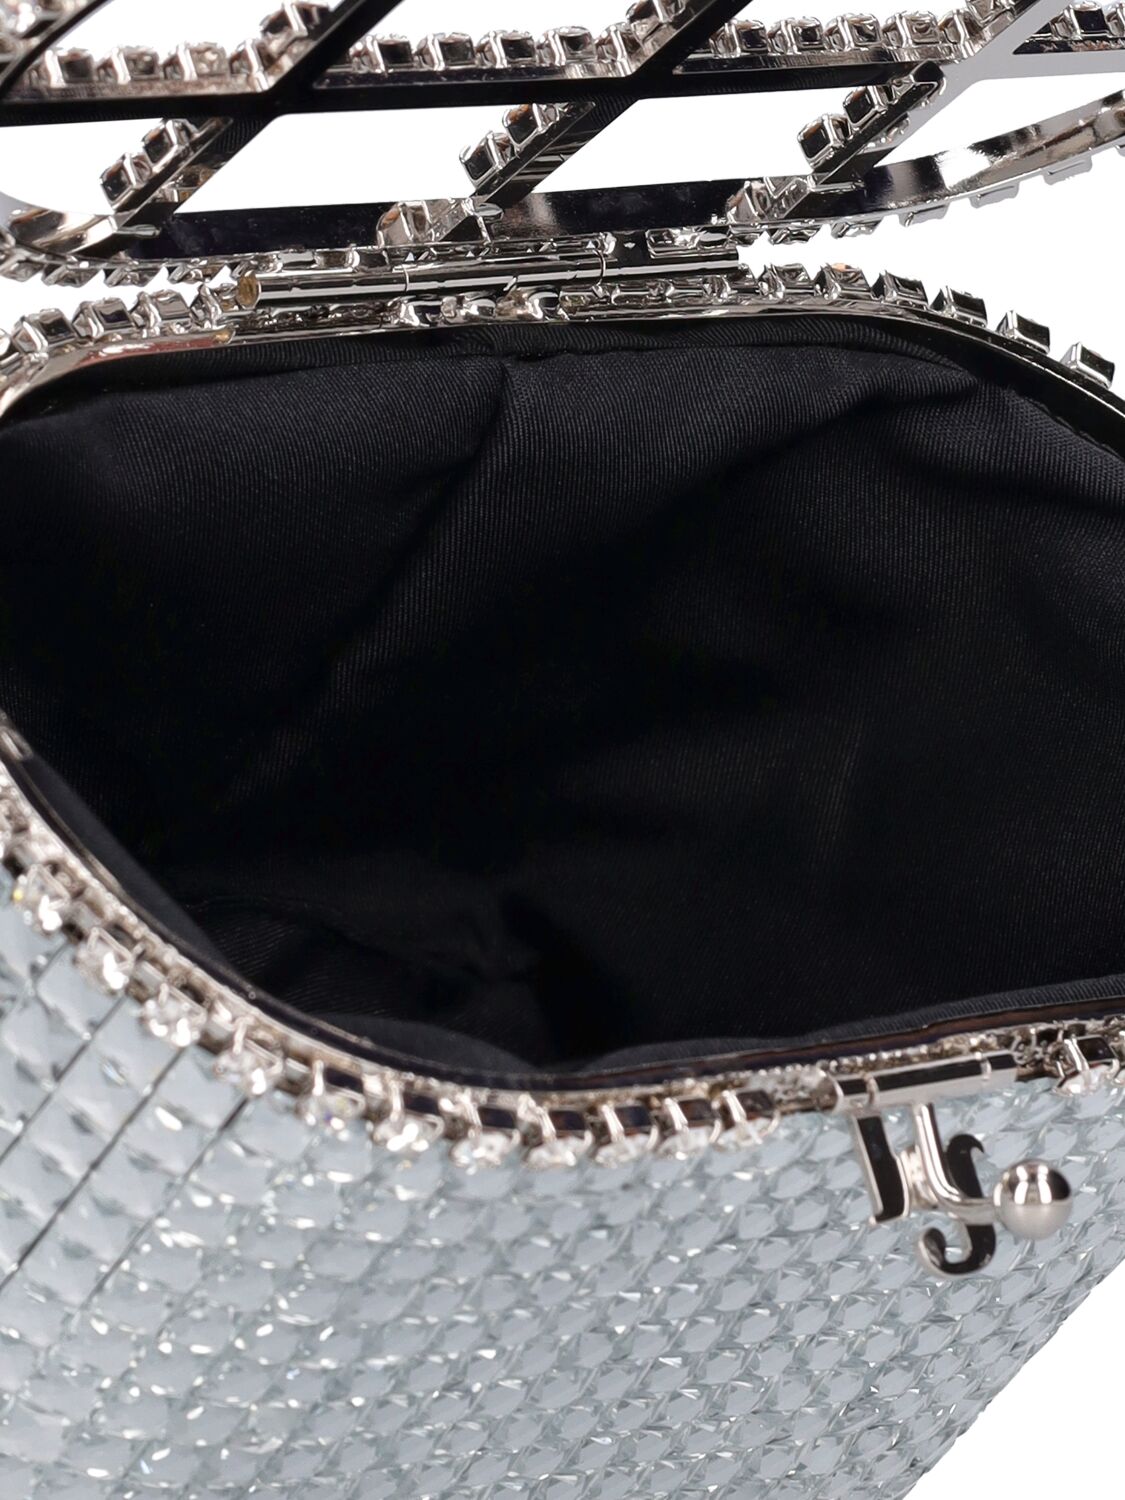 Shop Rosantica Mini Holli Vetro Top Handle Bag In Clear Crystals